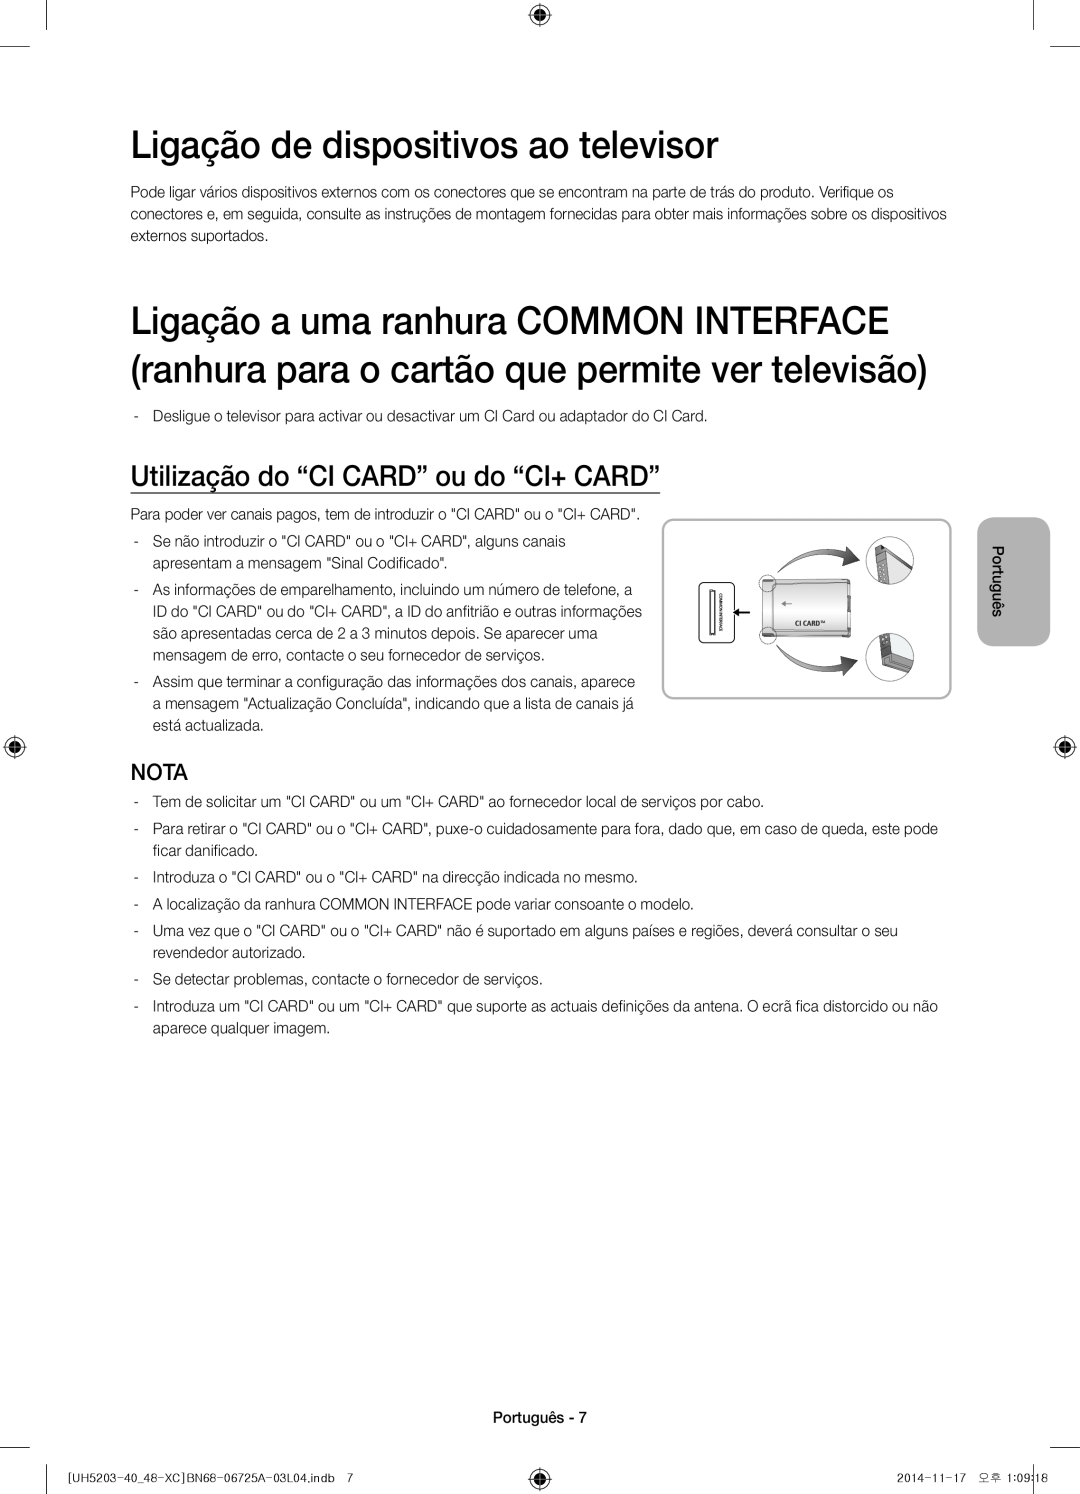 Samsung UE48H5203AWXXC manual Ligação de dispositivos ao televisor, Utilização do “CI CARD” ou do “CI+ CARD”, Nota 